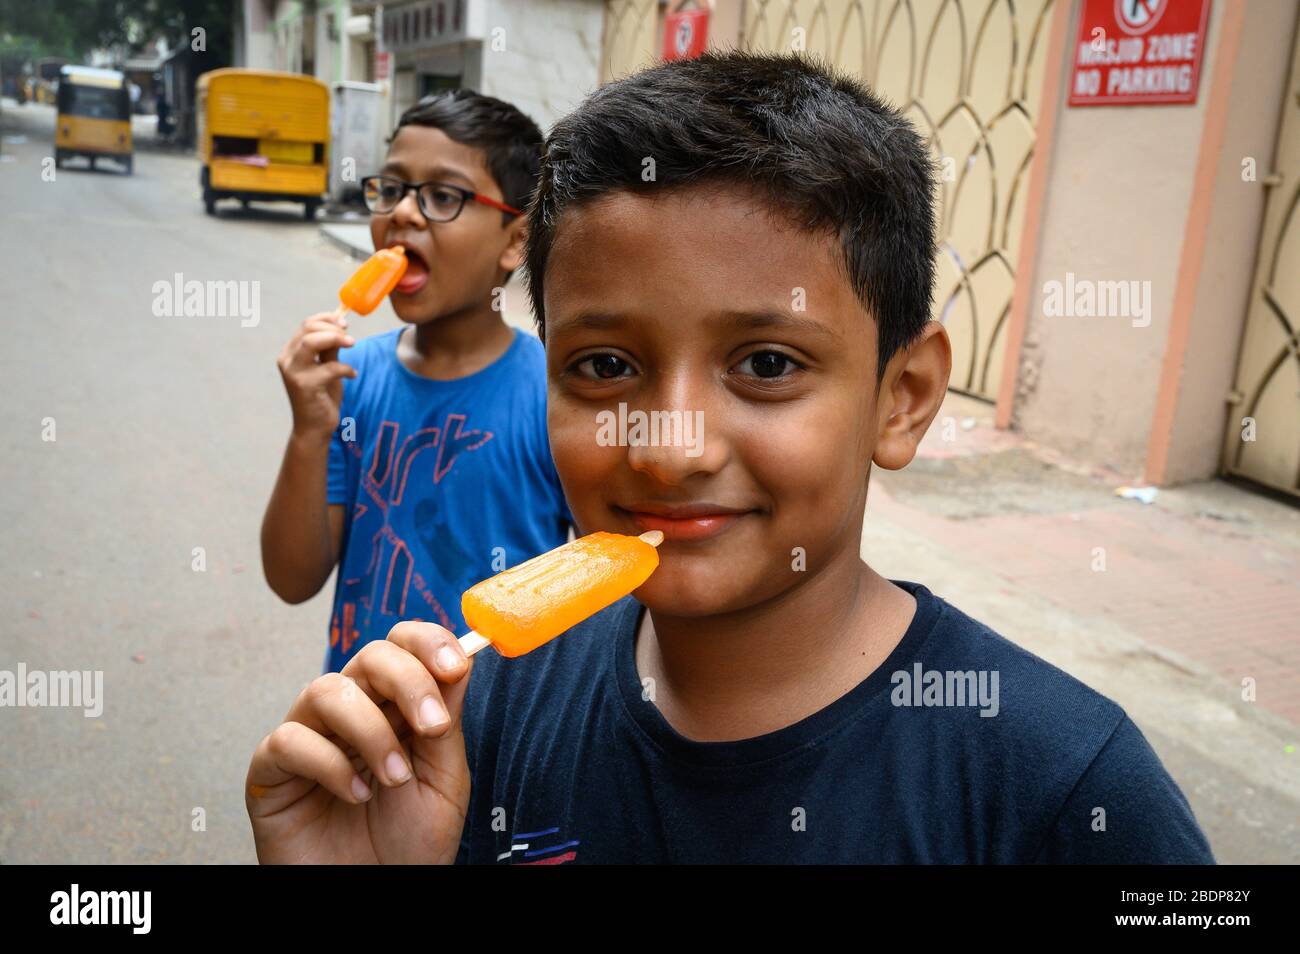 Two boys eating popcycles, Chennai, India Stock Photo